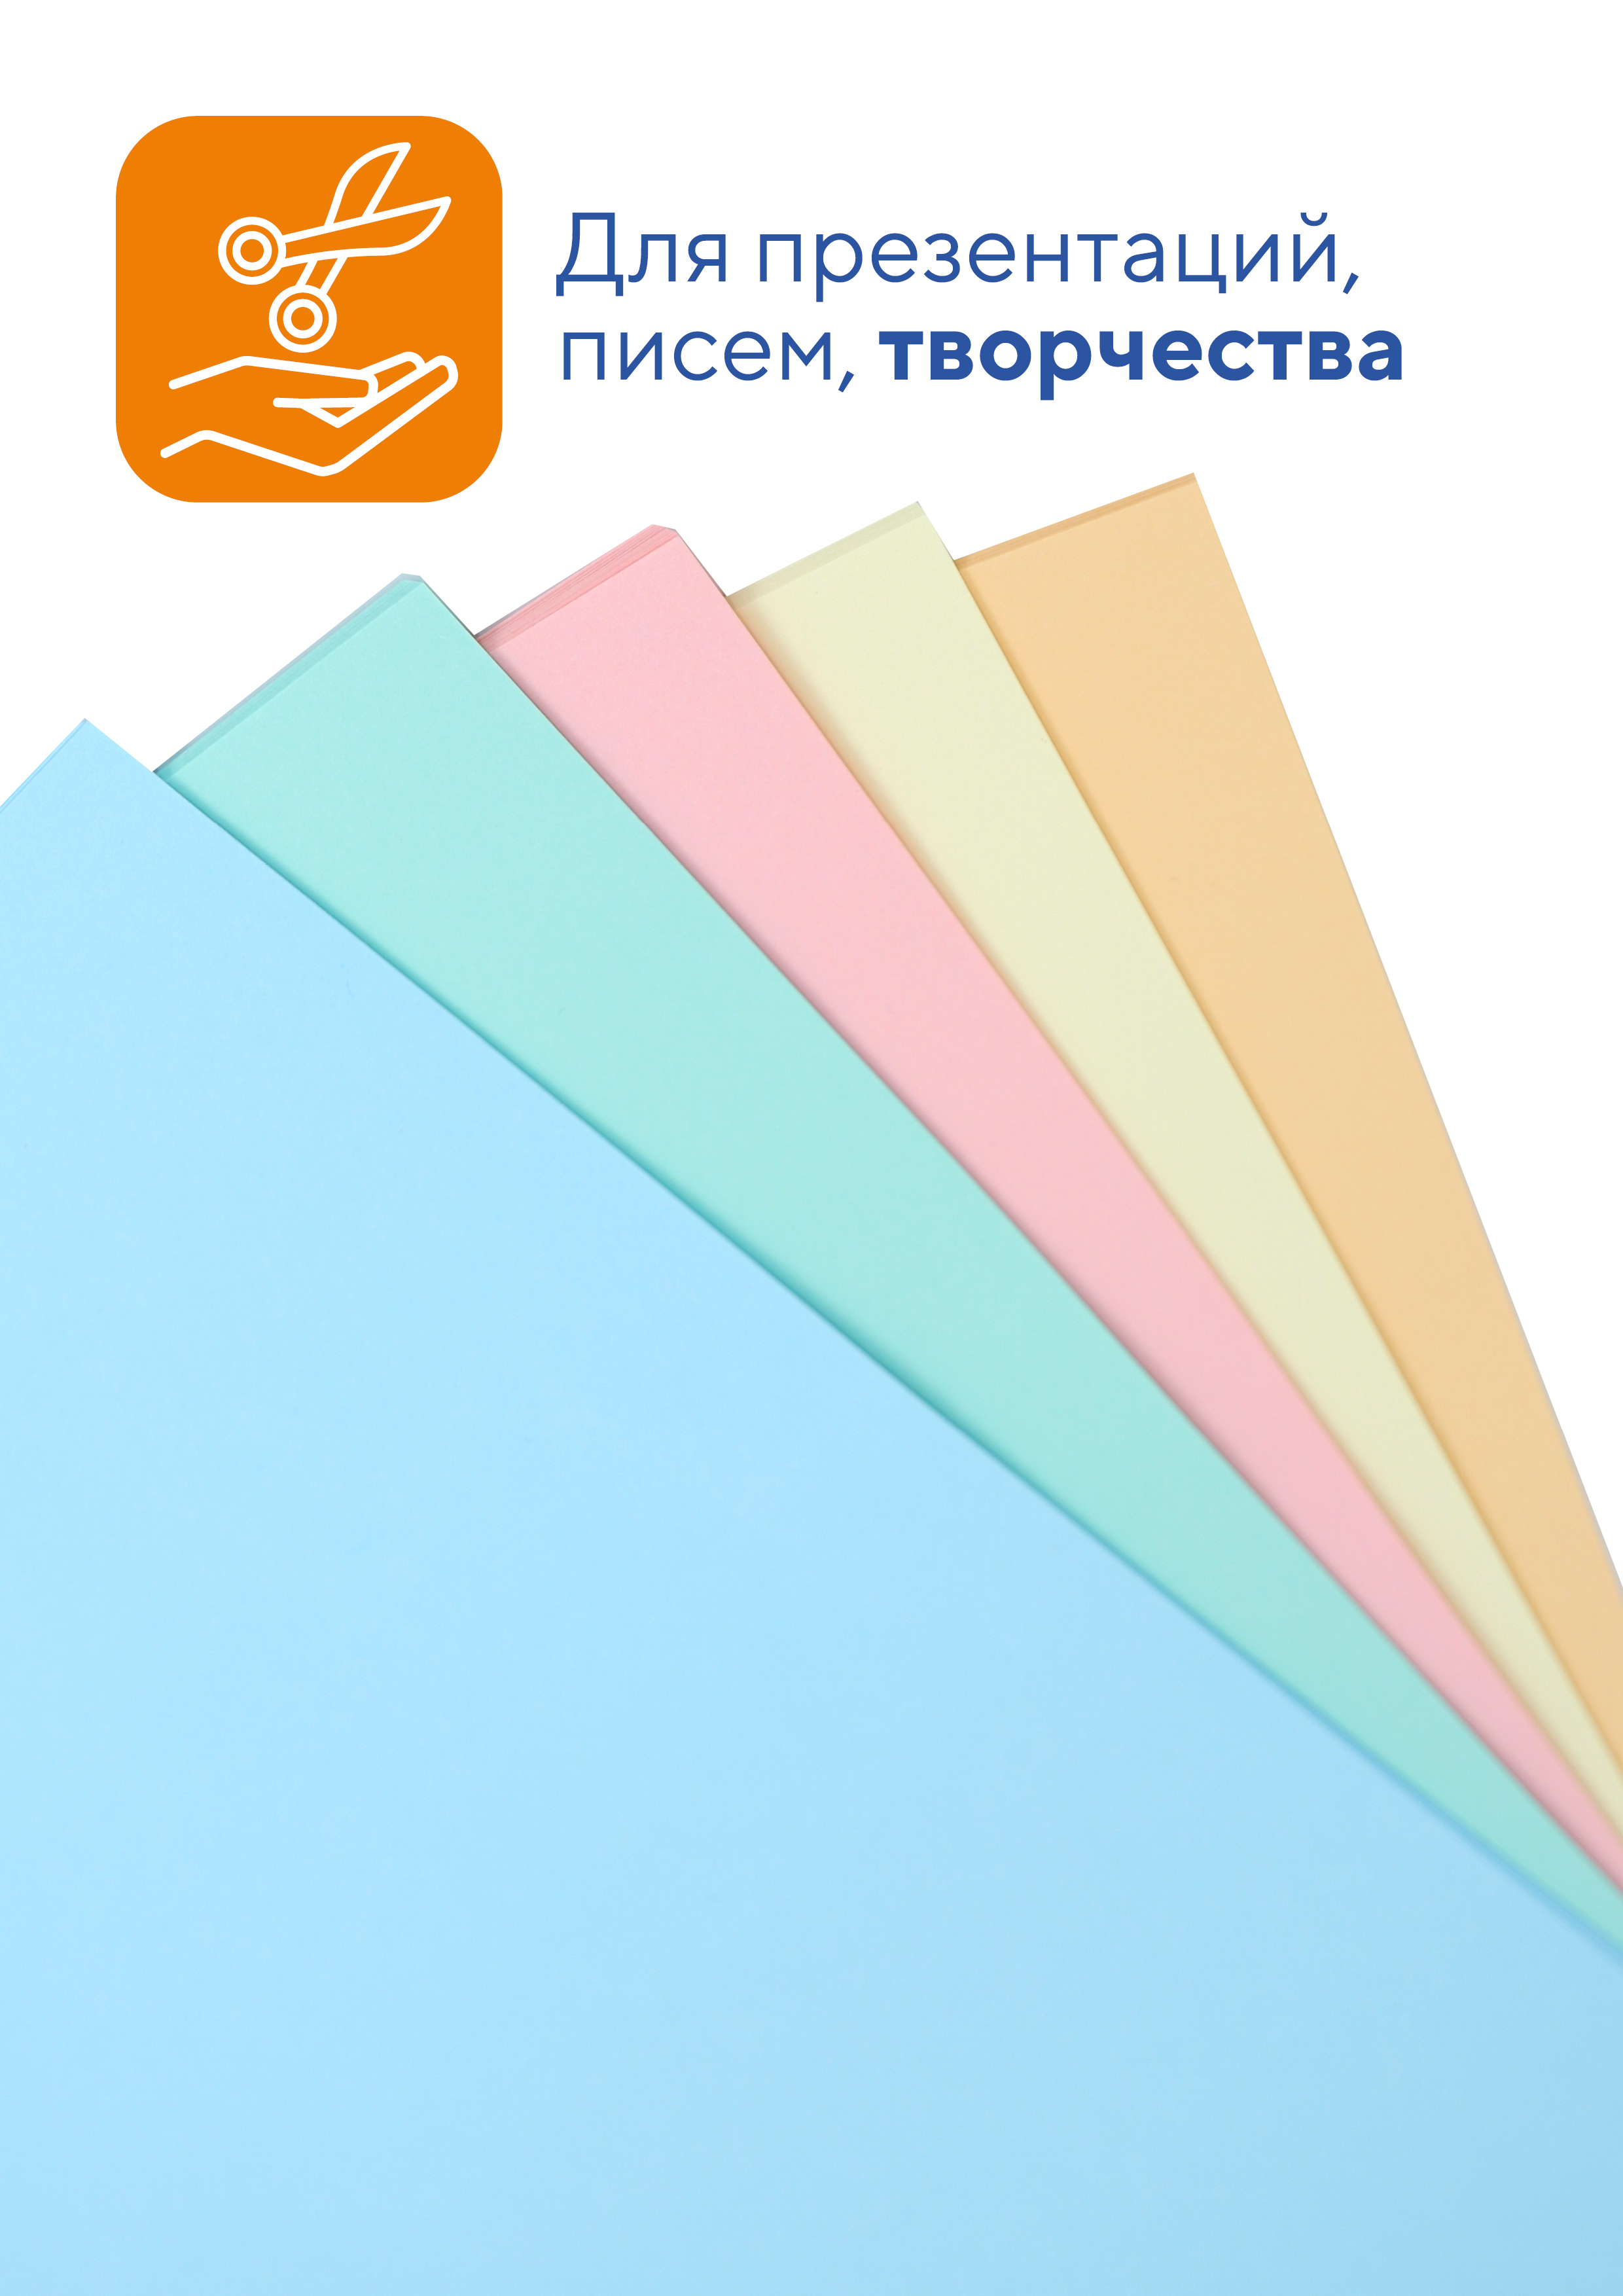 Бумага цветная WORKMATE для офисной техники А4 80 г/м2 50 листов пастель микс 5 цветов - фото 4